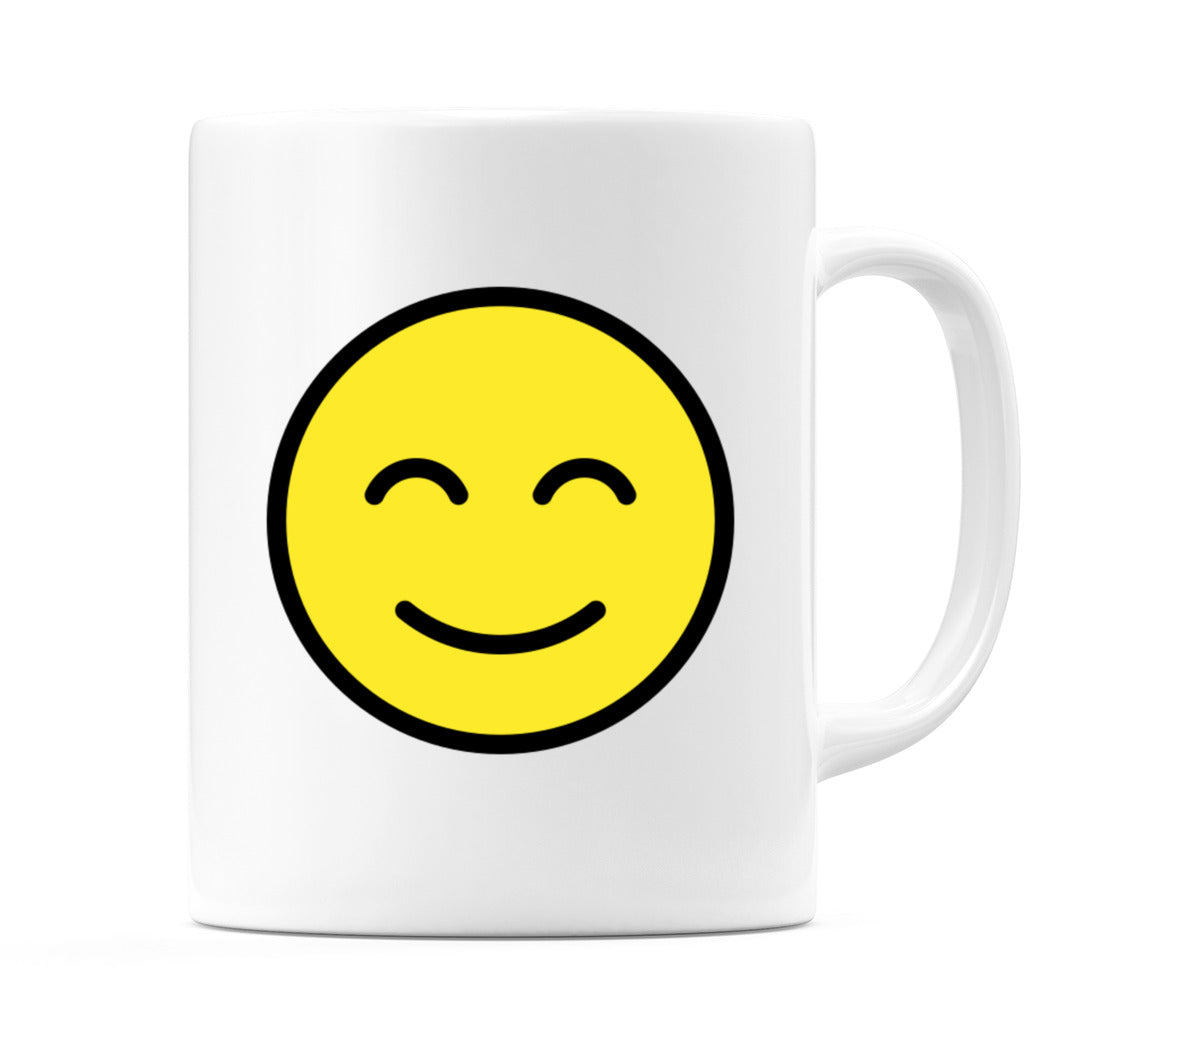 Smiling Face With Smiling Eyes Emoji Mug